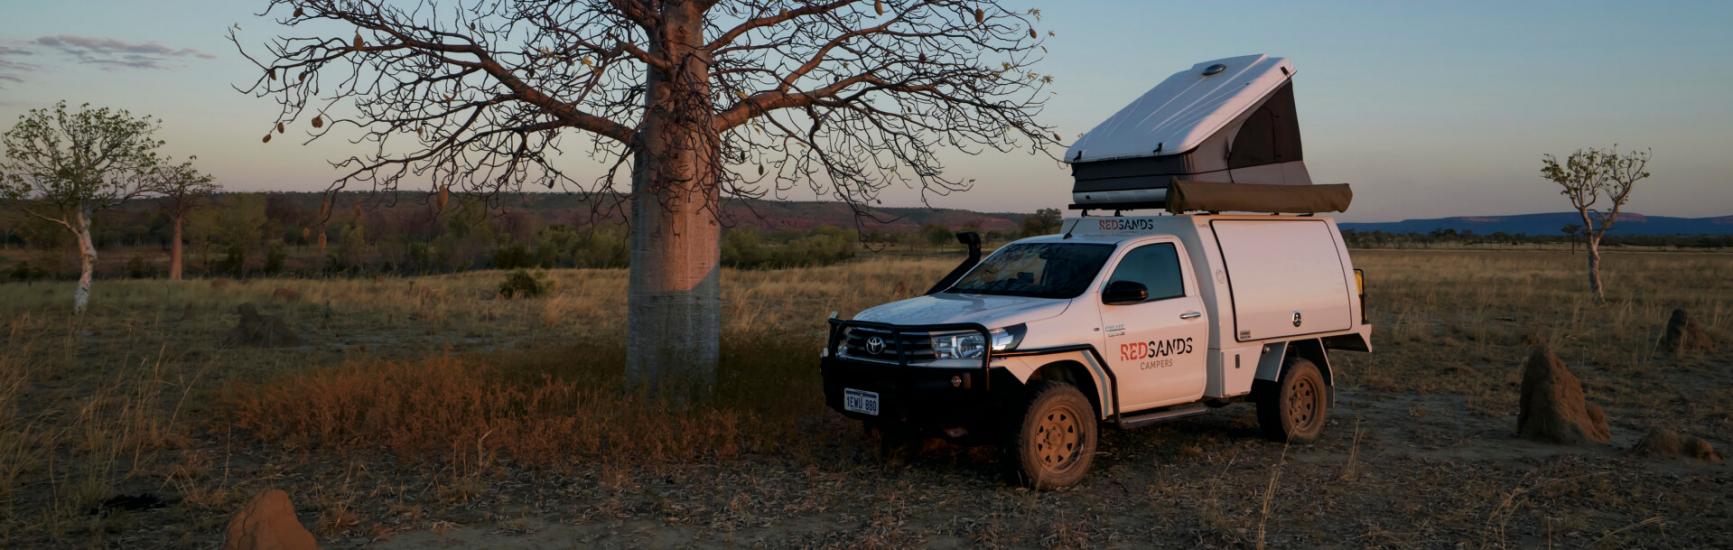 Redsands 4WD Camper im australischen Outback